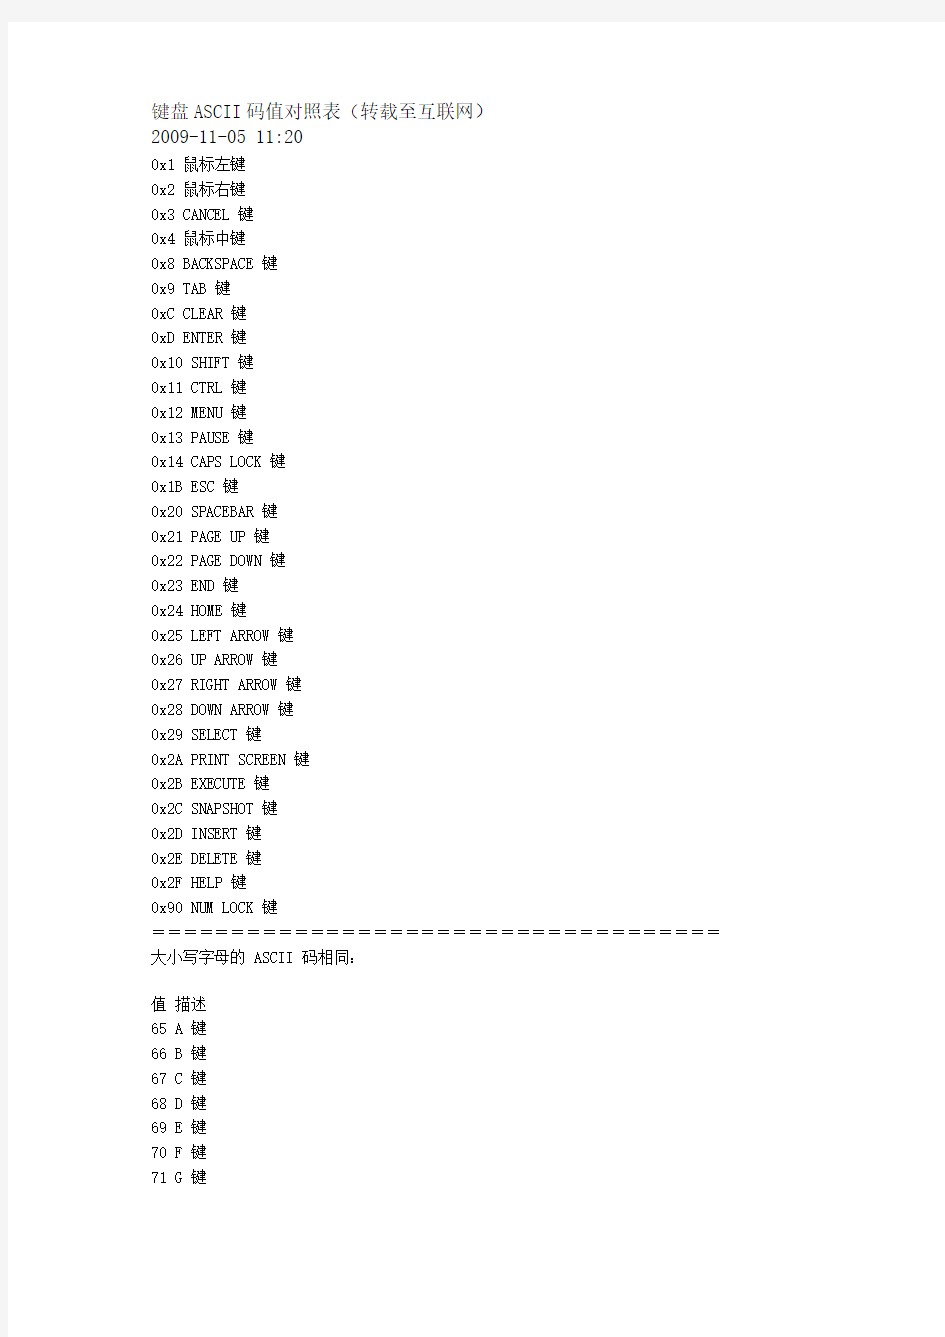 键盘ASCII码值对照表